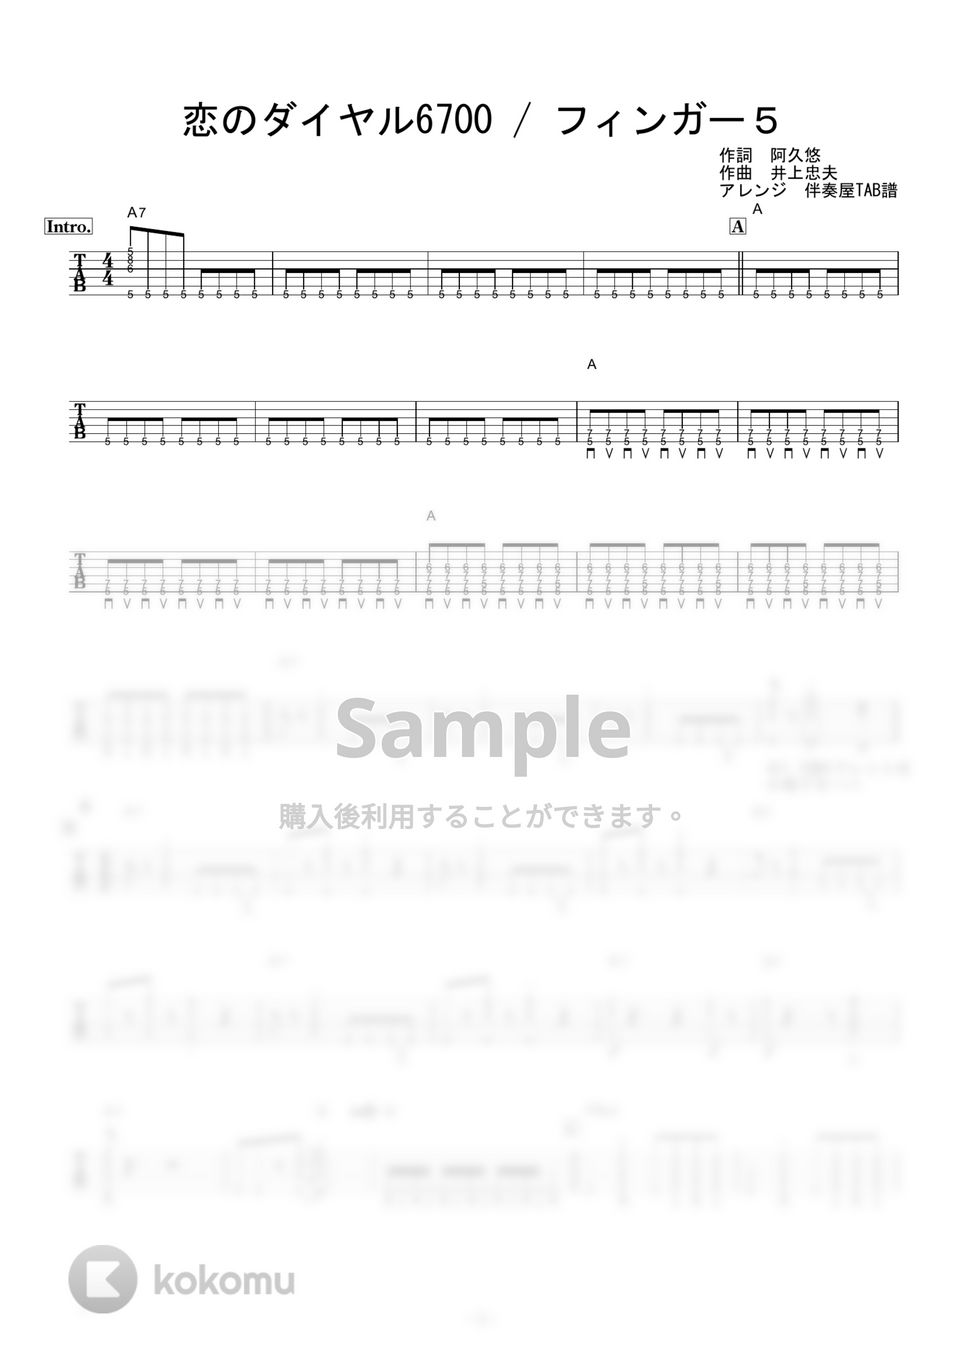 フィンガー５ - 恋のダイヤル6700 (ギター伴奏/イントロ・間奏ソロギター) by 伴奏屋TAB譜